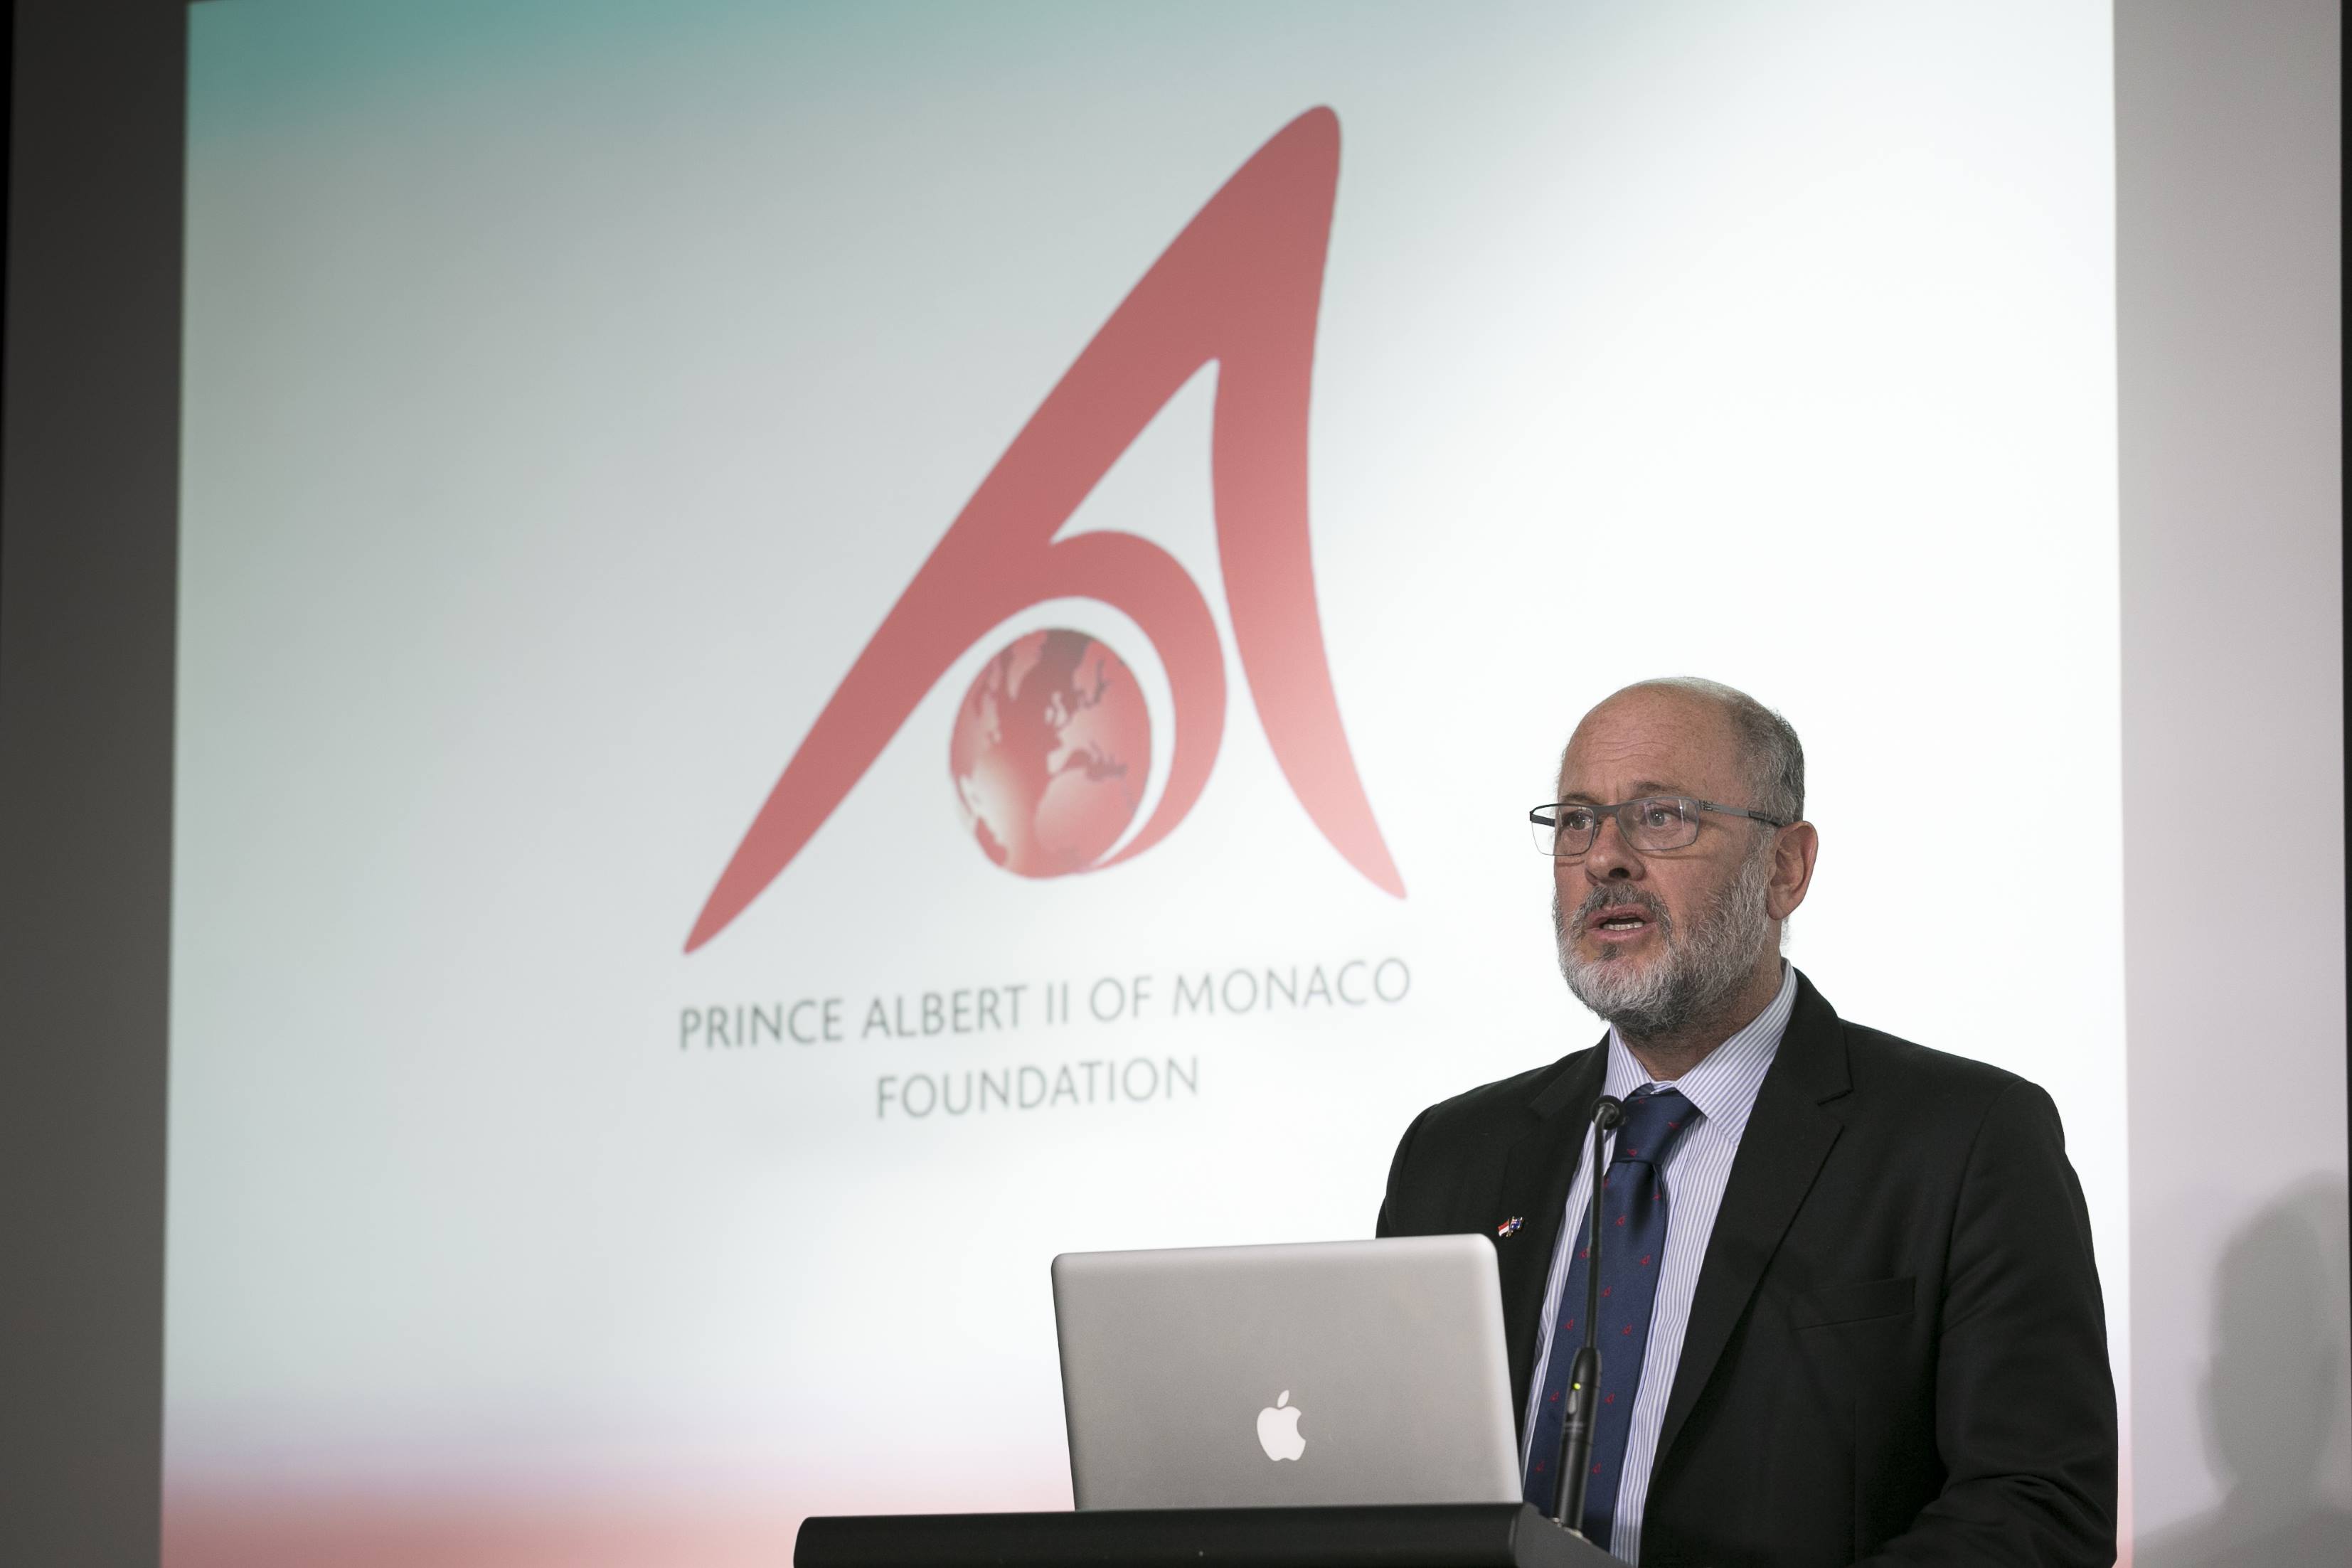 Presentazione della Fondazione Principe Alberto II di Monaco nell'ambito della Monaco Week Sydney